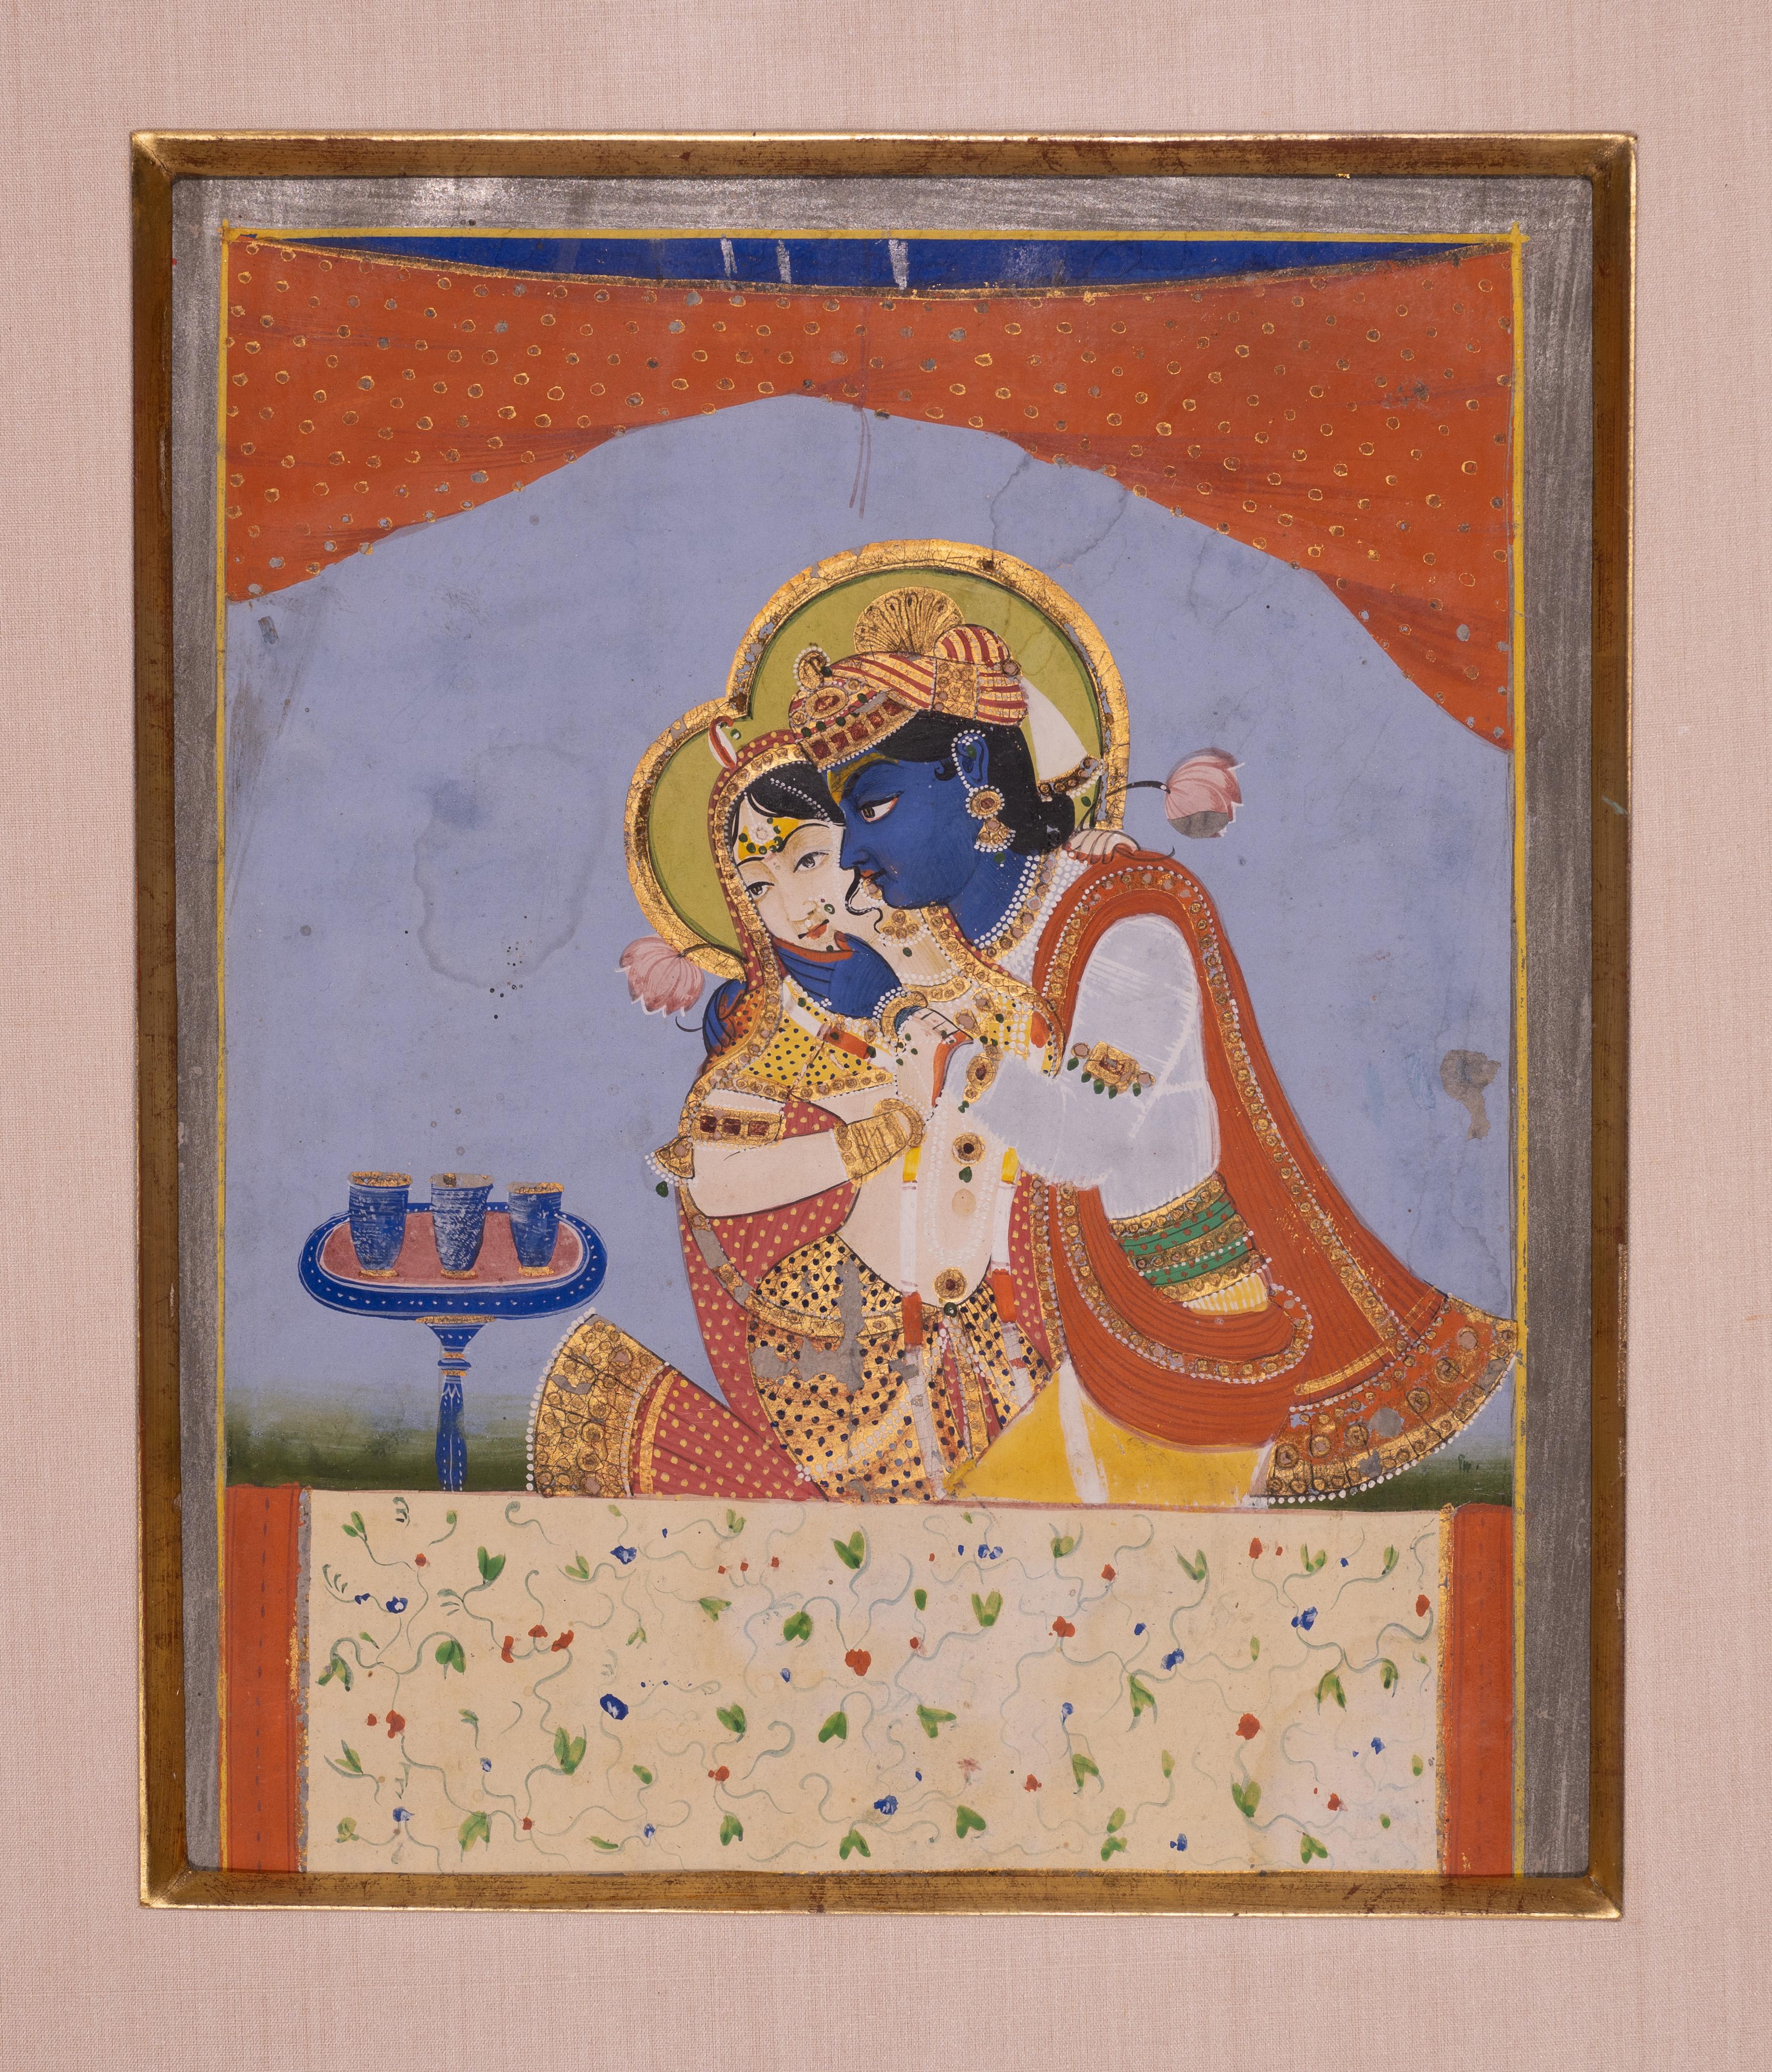 Charmante peinture du Seigneur Krishna et de sa compagne Radha, réalisée à l'aide de pigments minéraux (gouache) avec des rehauts d'or et d'argent, vers le milieu du XIXe siècle, dans le style de Jaipur.

Krishna était un dieu (une incarnation du